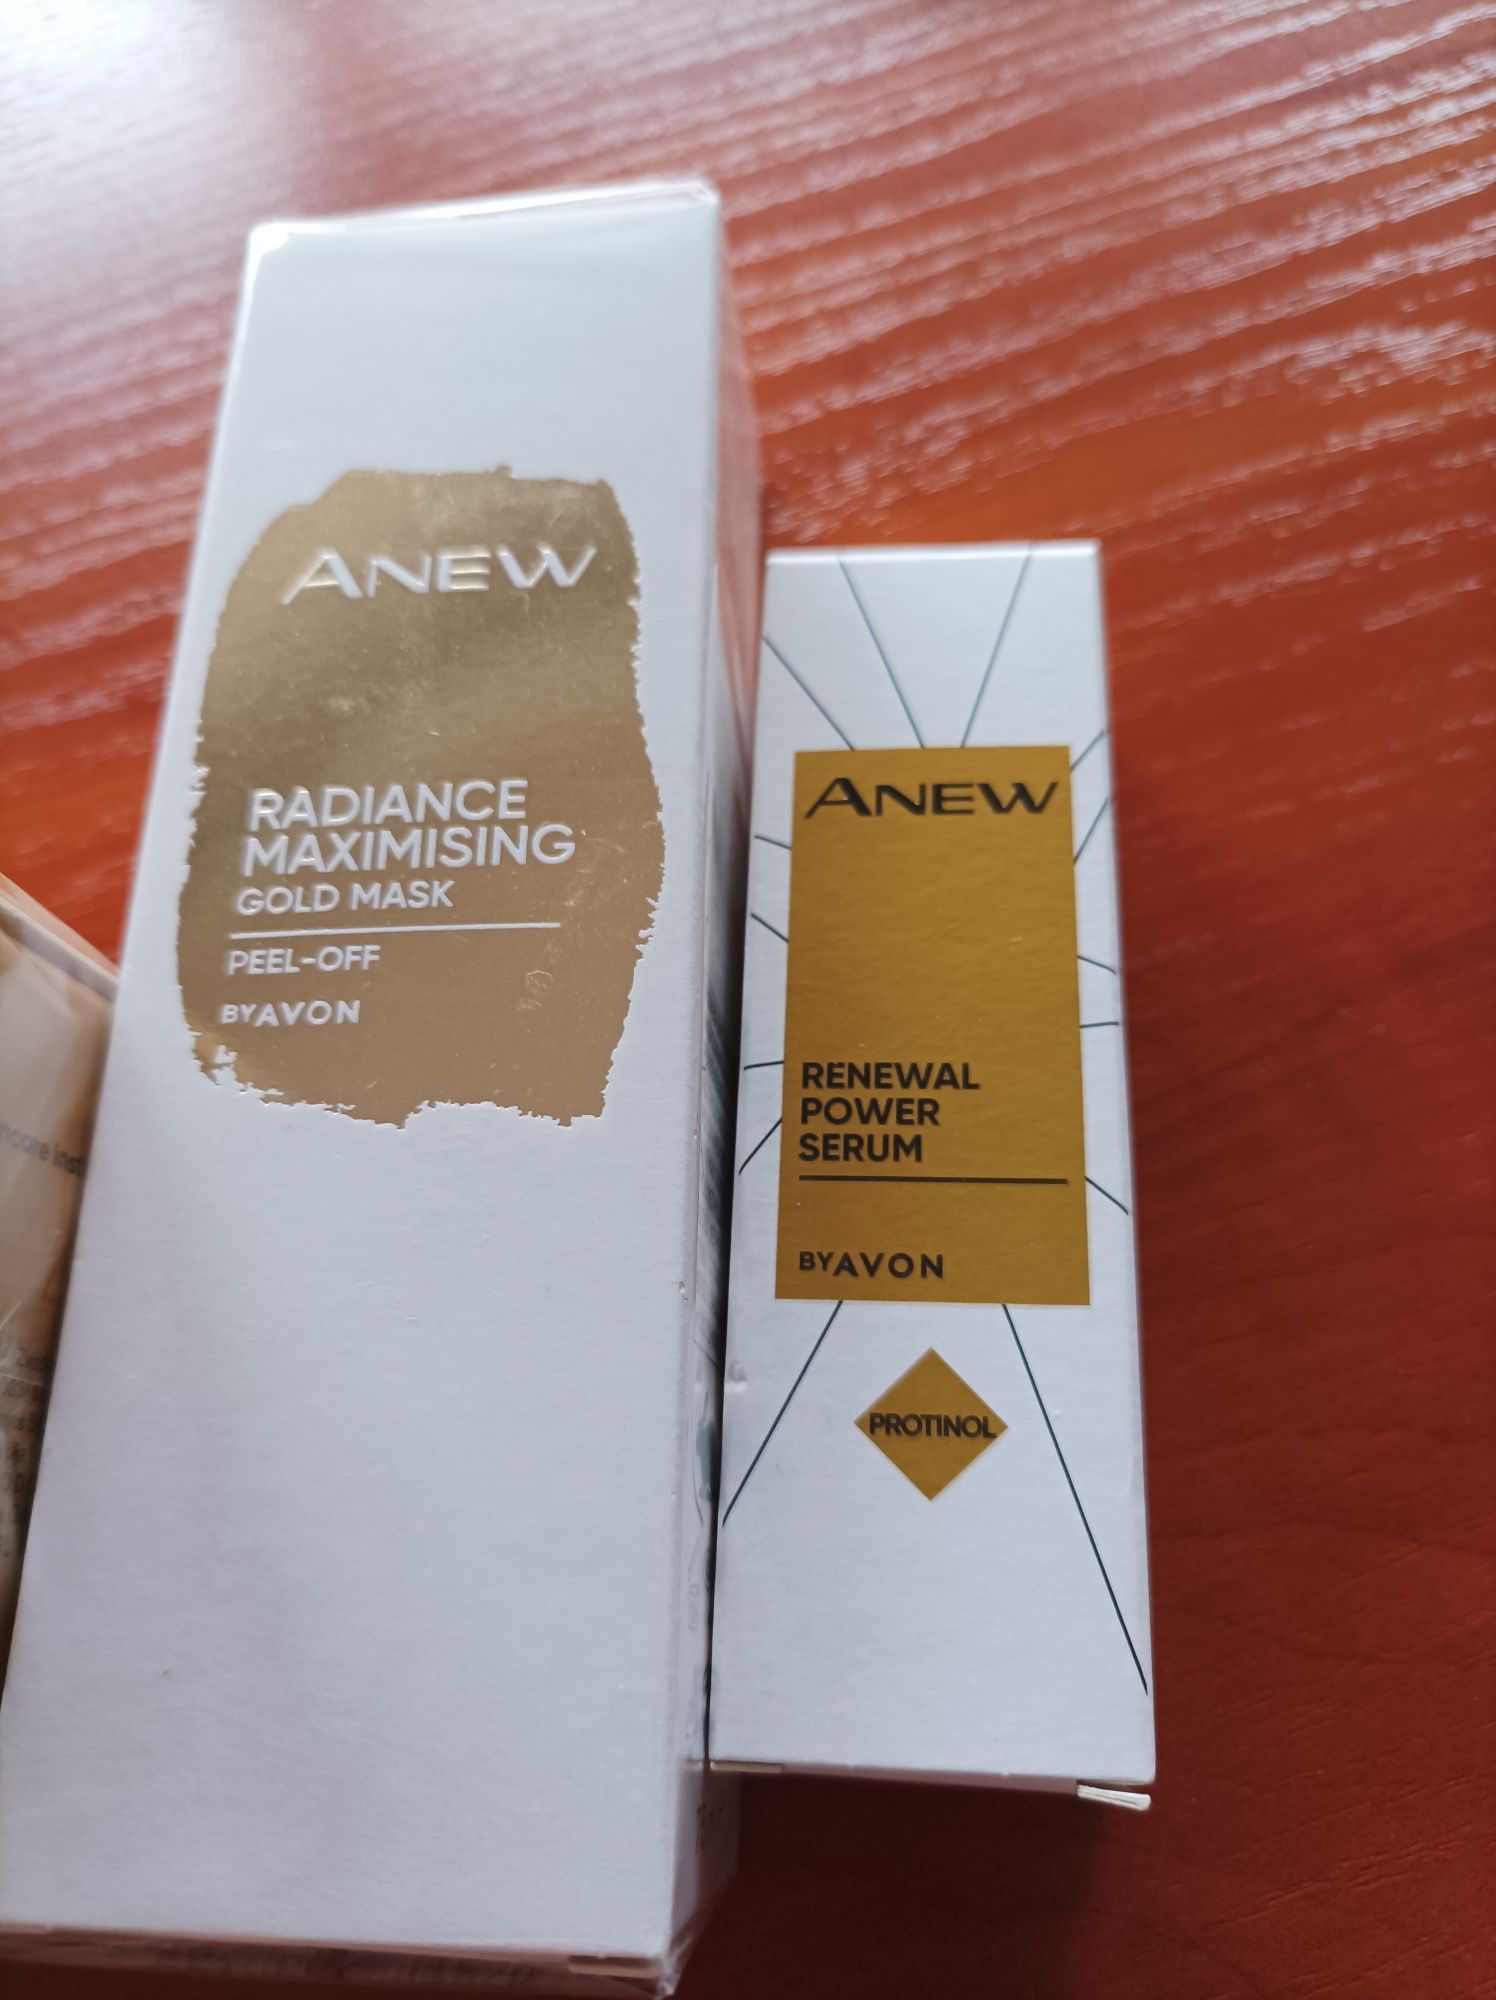 Zestaw kosmetyków Avon Anew ze złotem